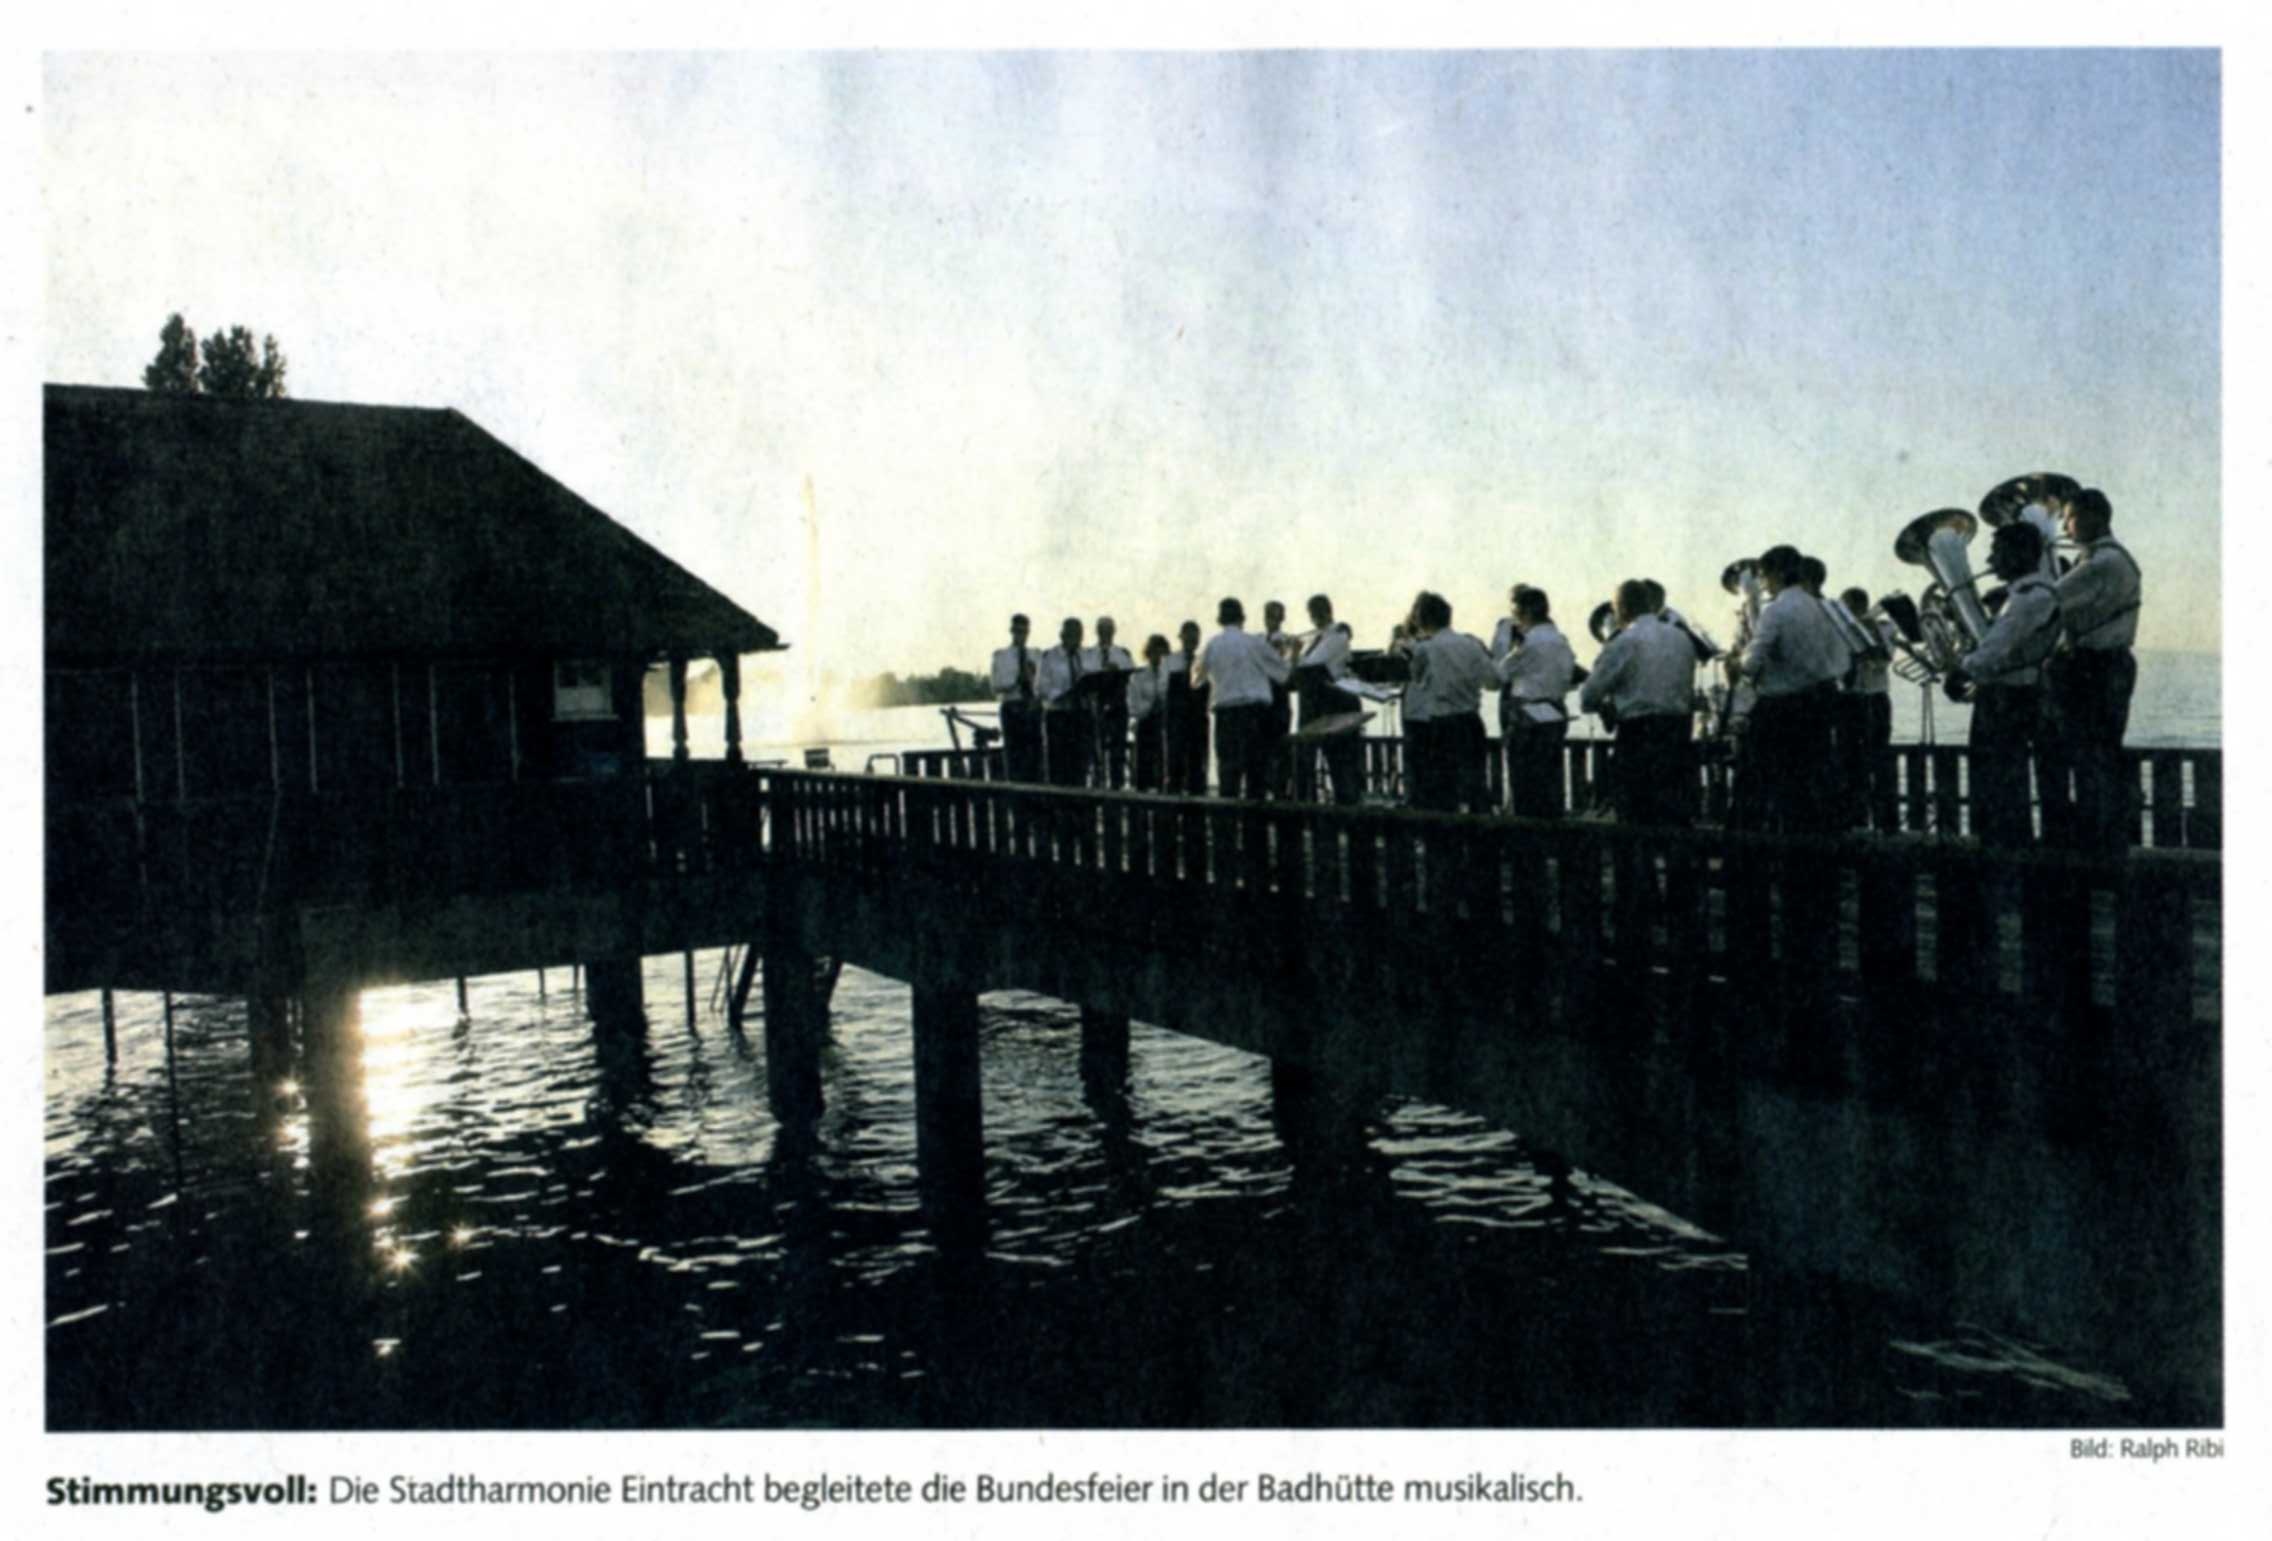 Die Eintracht bei ihrem Auftritt in der Badhütte, Bild Ralph Ribi, Copyright © St.Galler Tagblatt AG